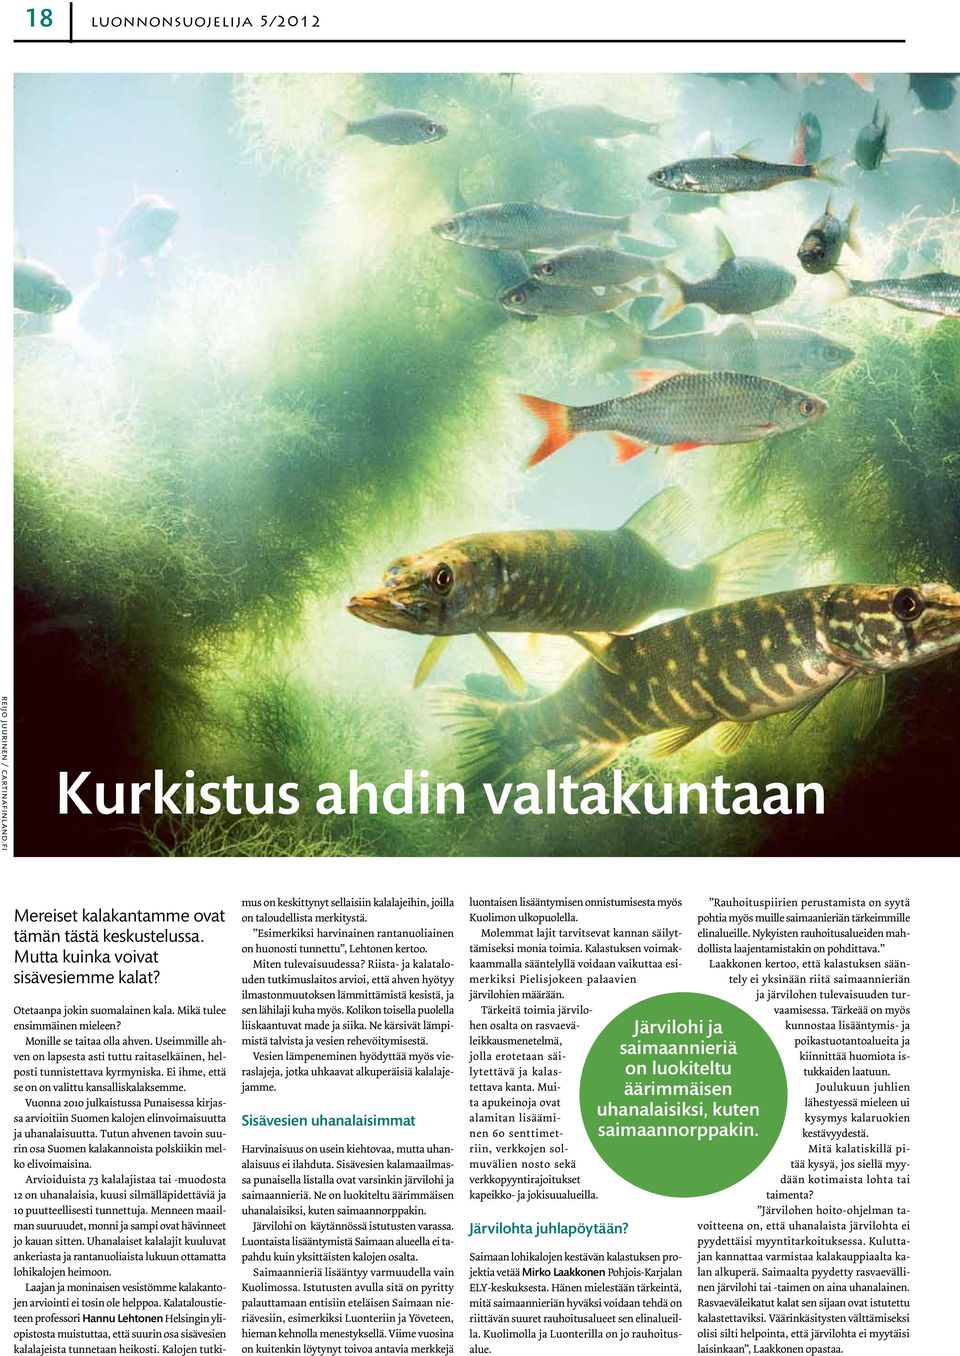 Ei ihme, että se on on valittu kansalliskalaksemme. Vuonna 2010 julkaistussa Punaisessa kirjassa arvioitiin Suomen kalojen elinvoimaisuutta ja uhanalaisuutta.